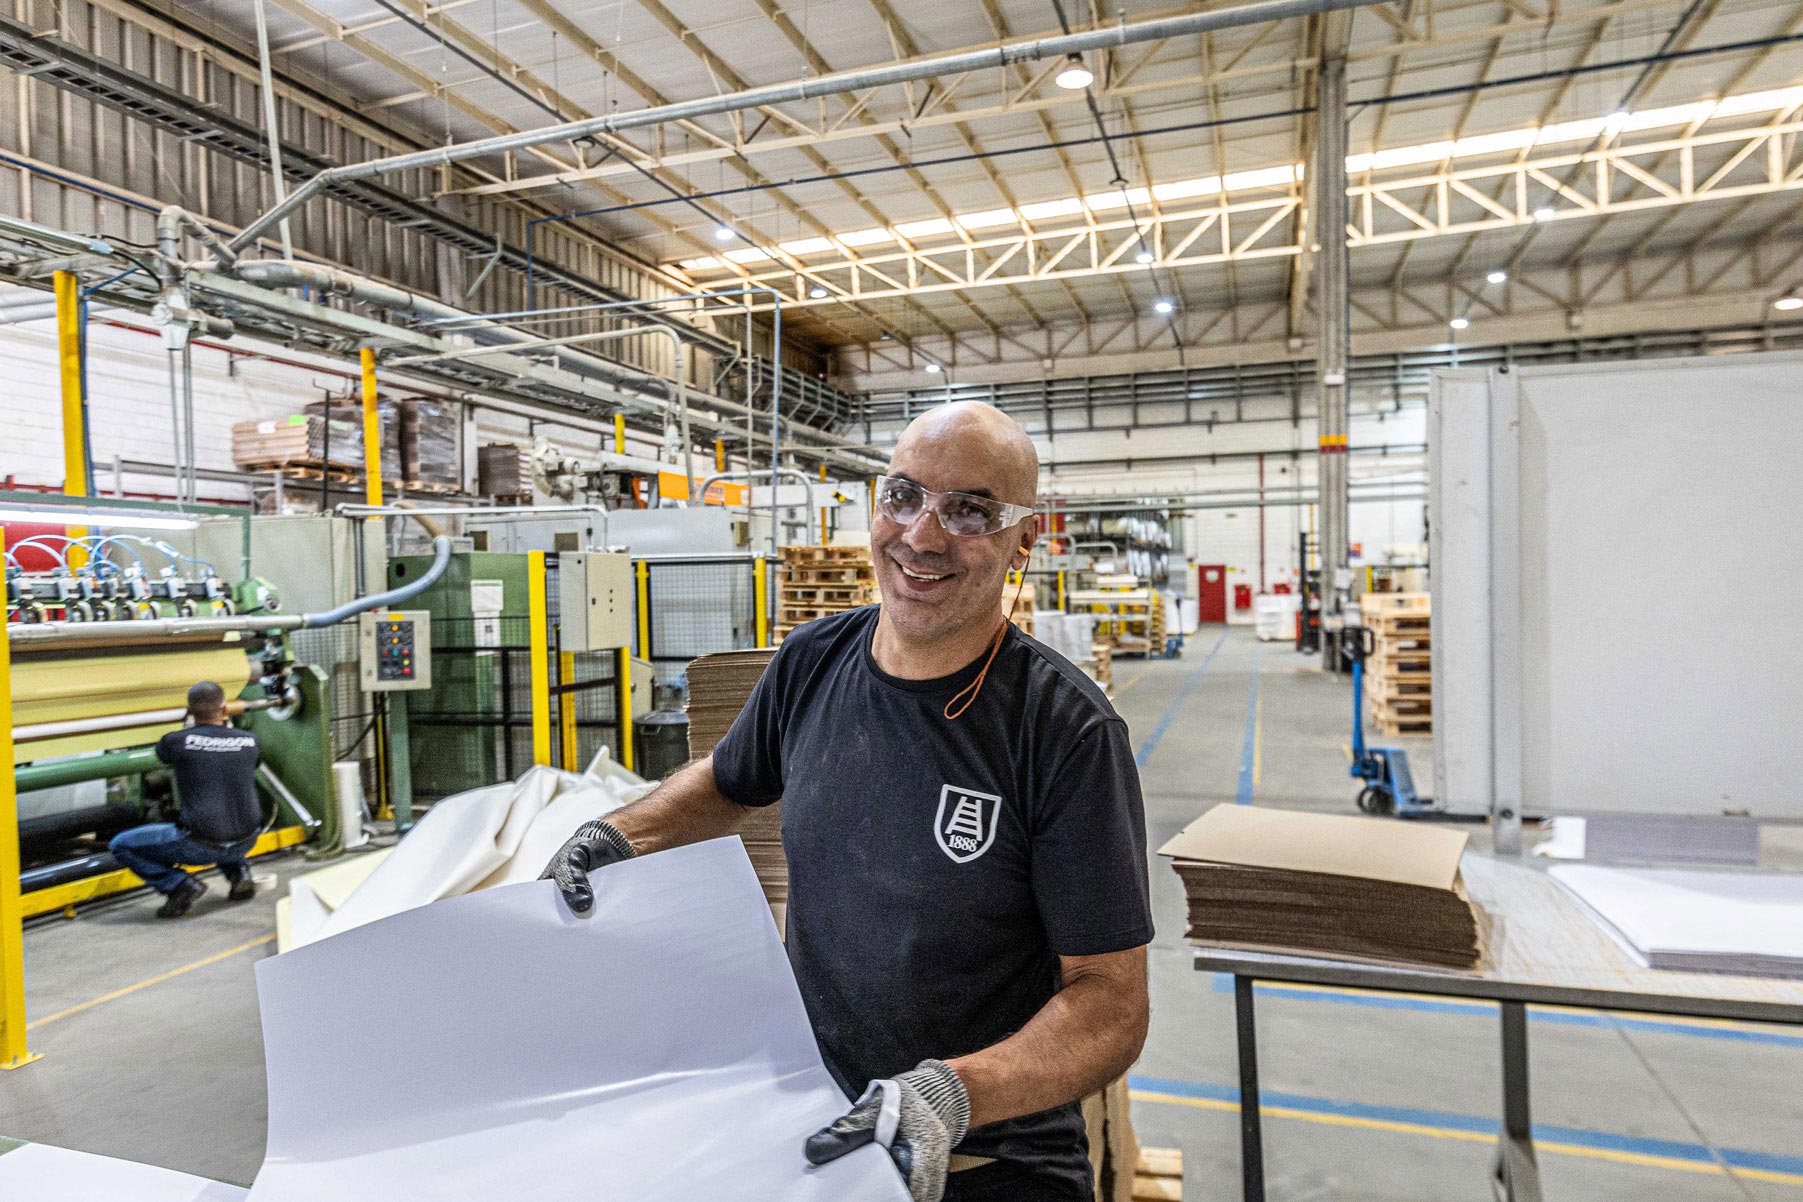 Un uomo in una fabbrica tiene in mano un pezzo di carta.